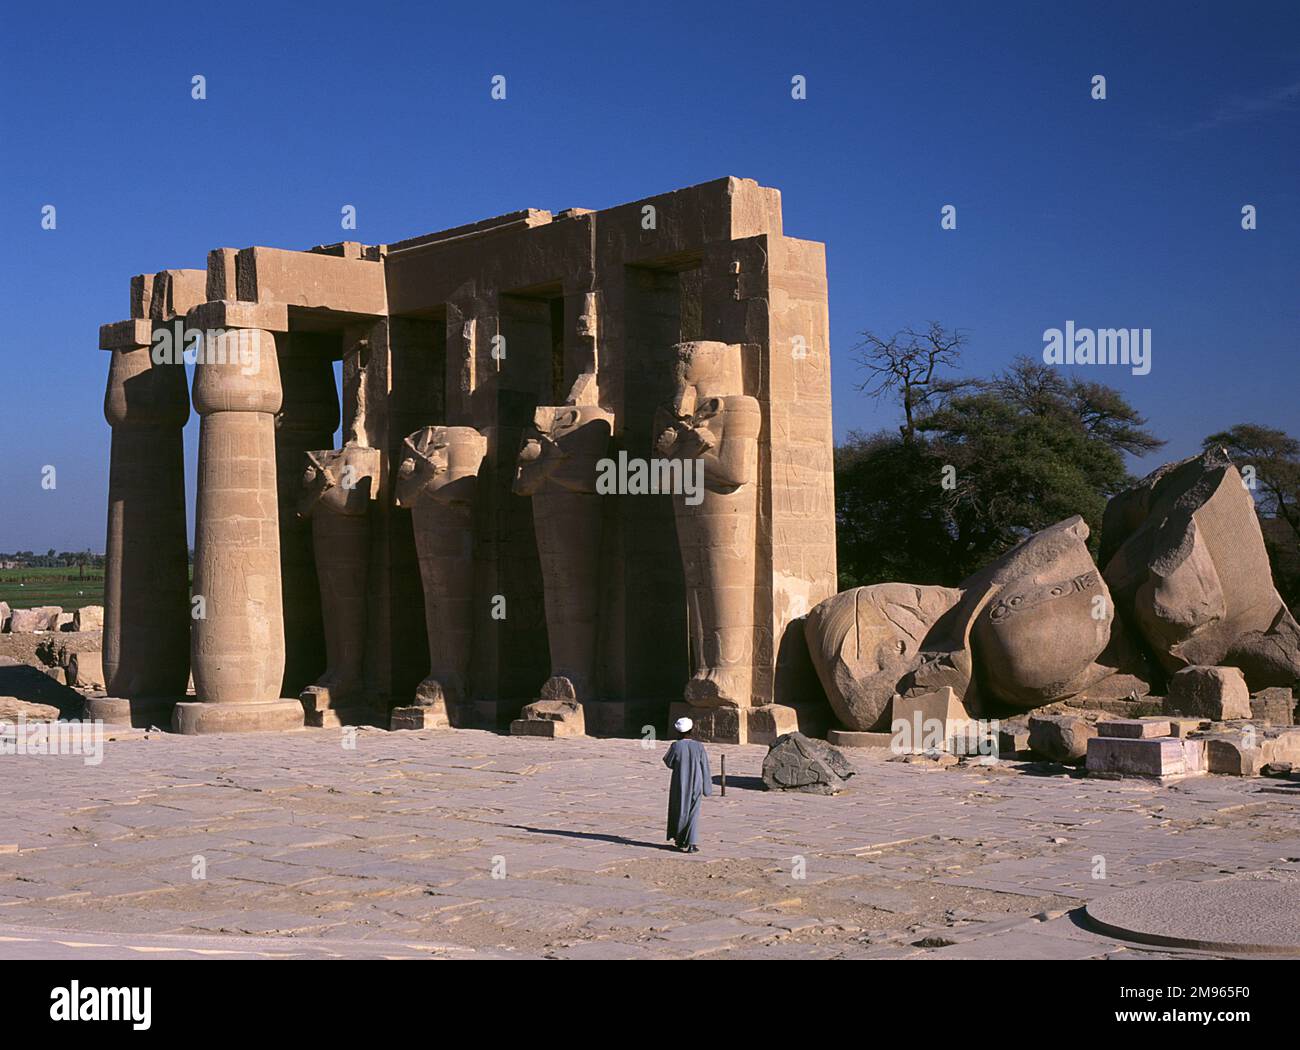 Das RAMESSEUM, das Mausoleum des ägyptischen Pharao RAMES II Hier sehen wir die 4 Osiris-Säulen und 2 Papyrus-Säulen, mit der gefallenen Statue von Ramses, Theben (Luxor), Ägypten Stockfoto